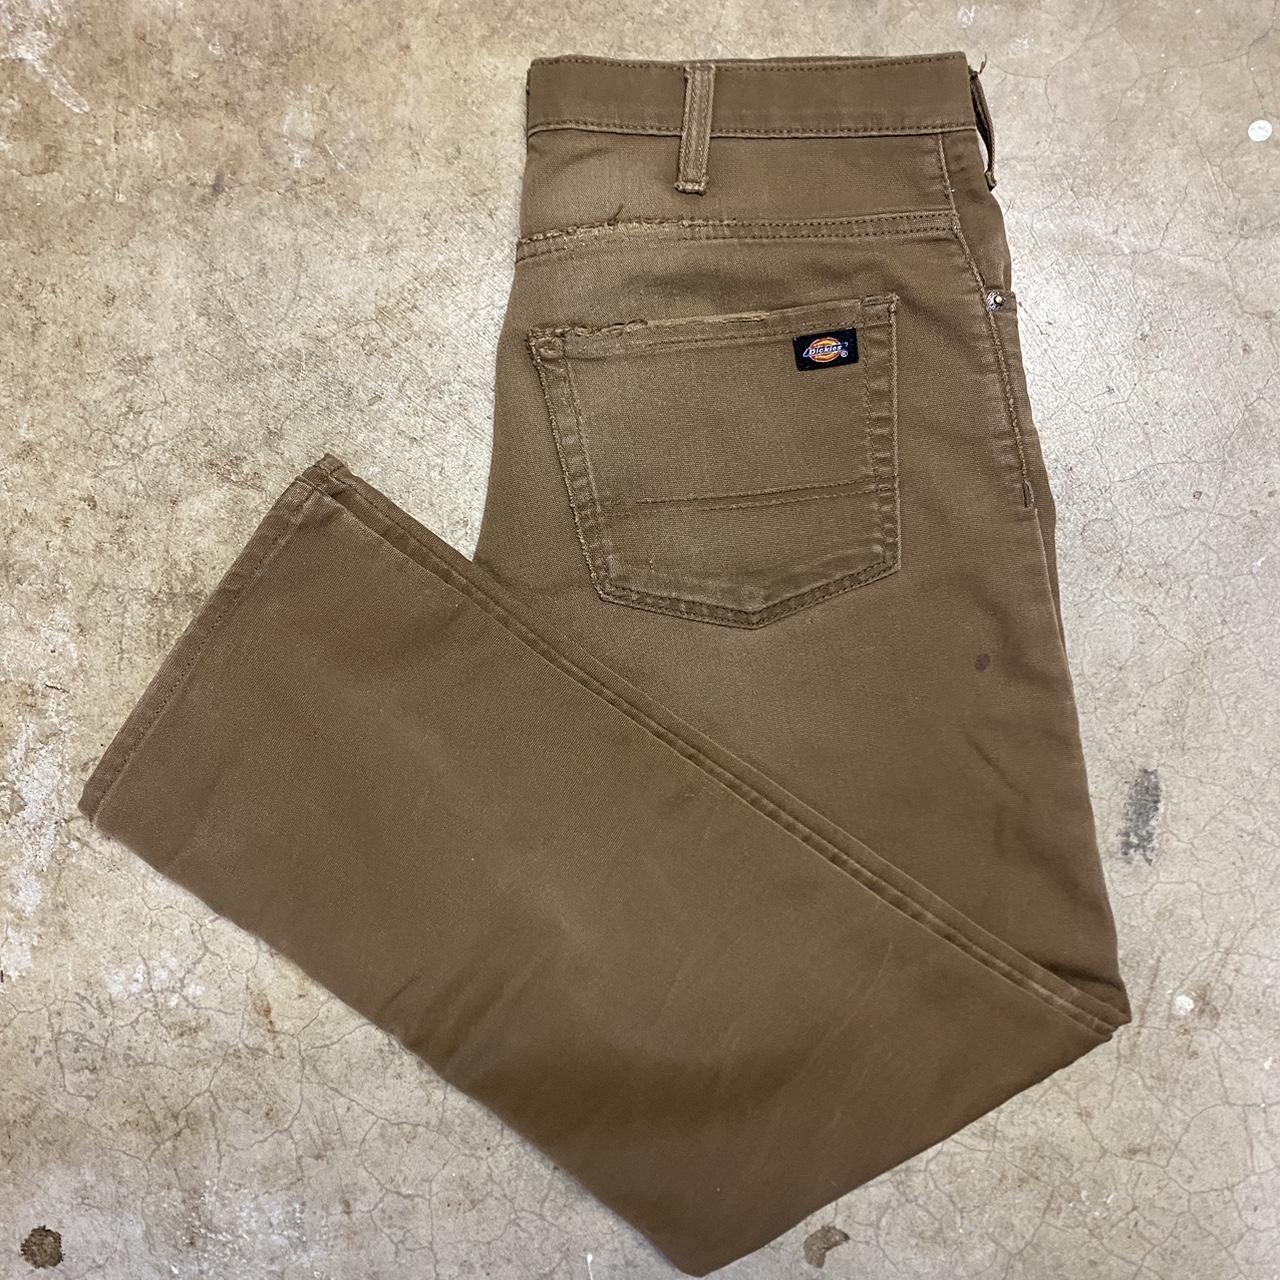 Distressed brown dickies pants Size 32x32 Good... - Depop